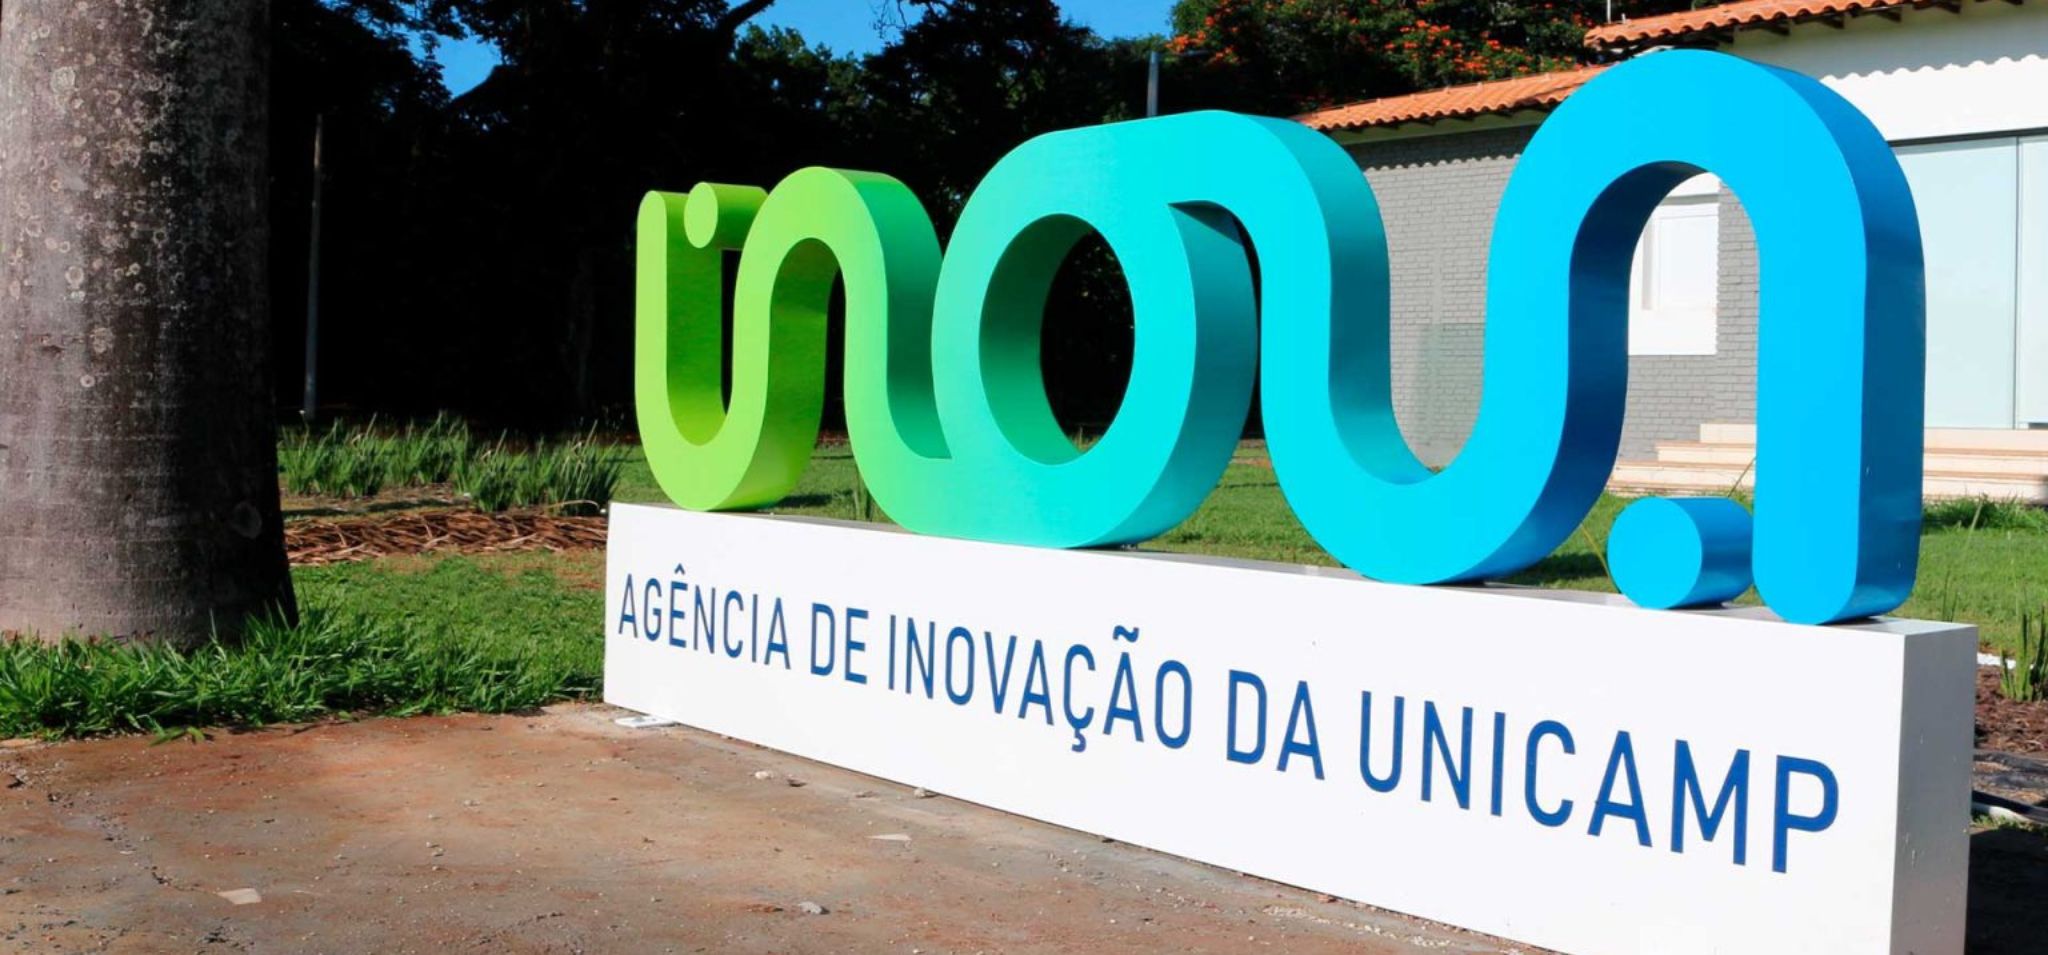 Monumento do Inova, escrito agência de inovação da Unicamp com uma casa ao fundo